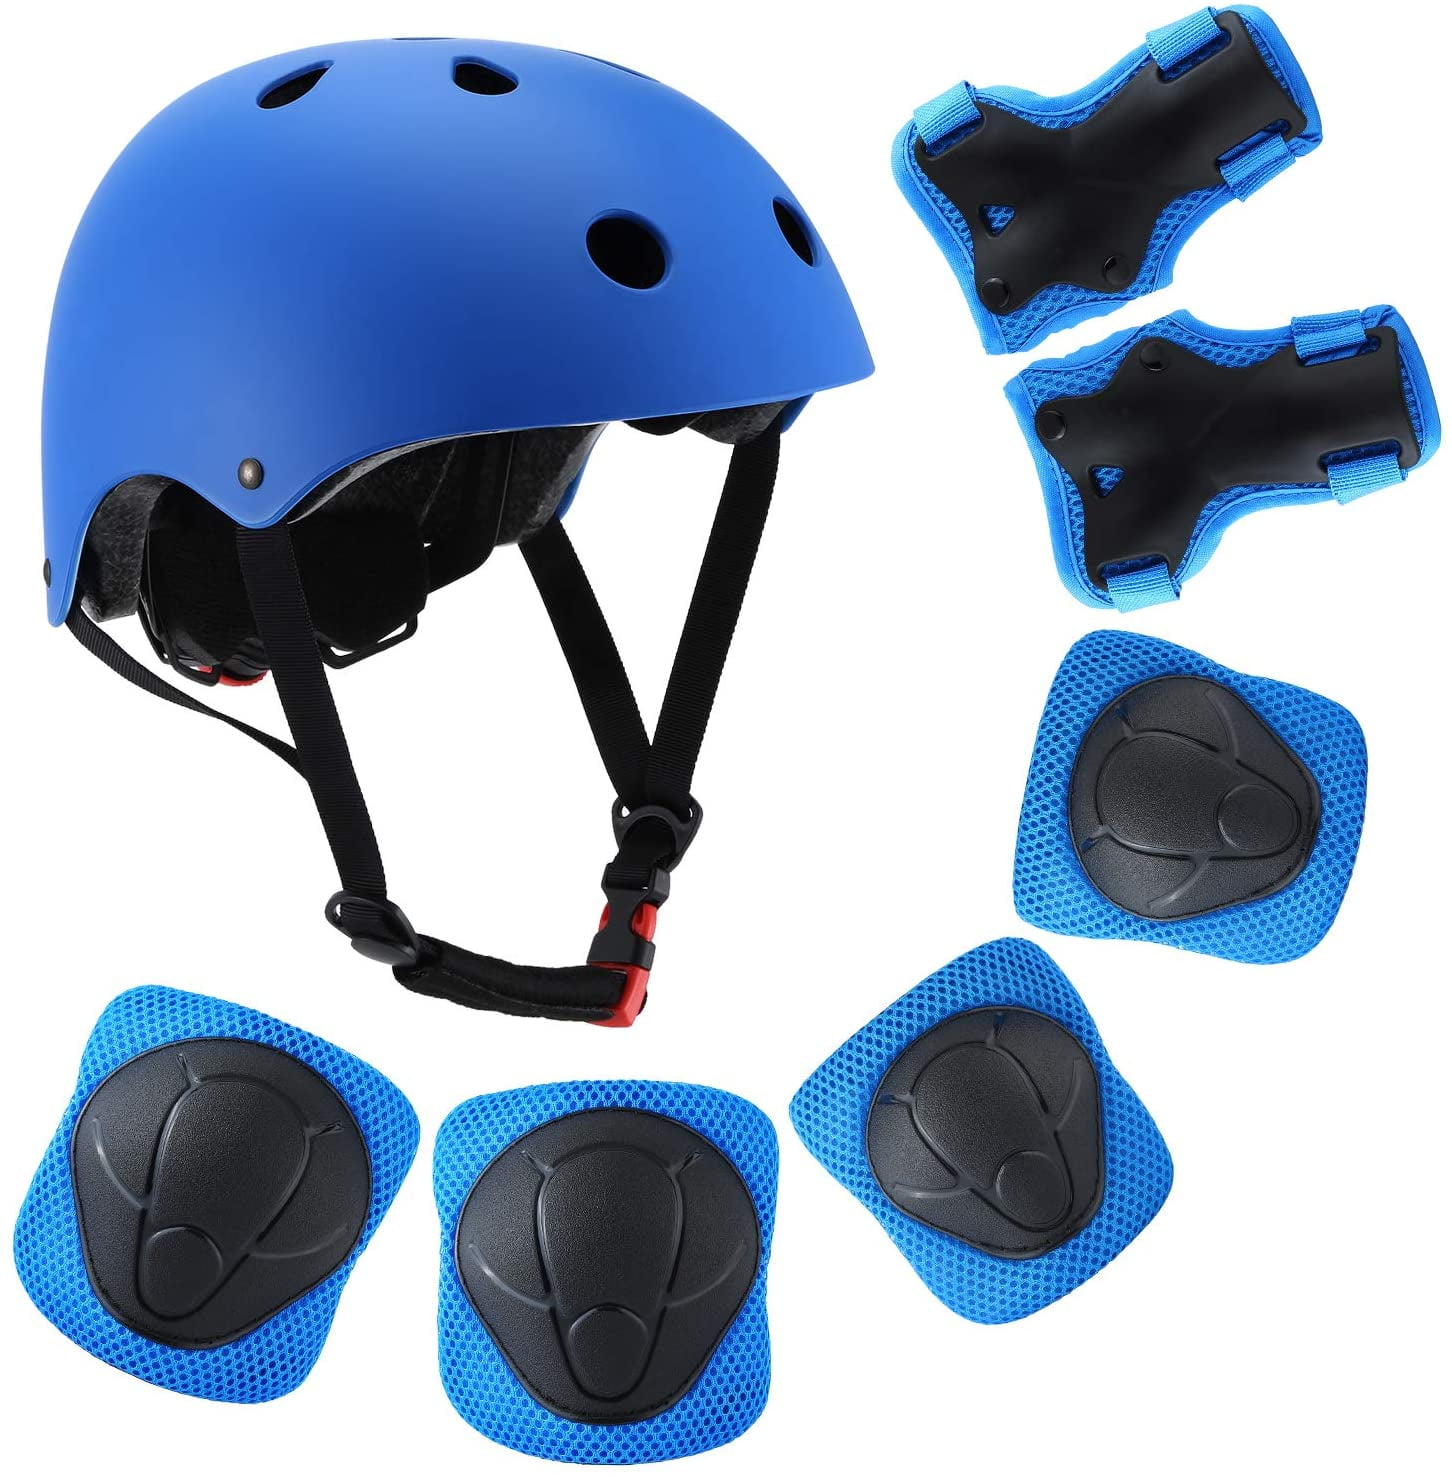 Details about   7 Set Boys Girls Kids Safety Skating Bike Helmet Knee Elbow Protective Gear Set 